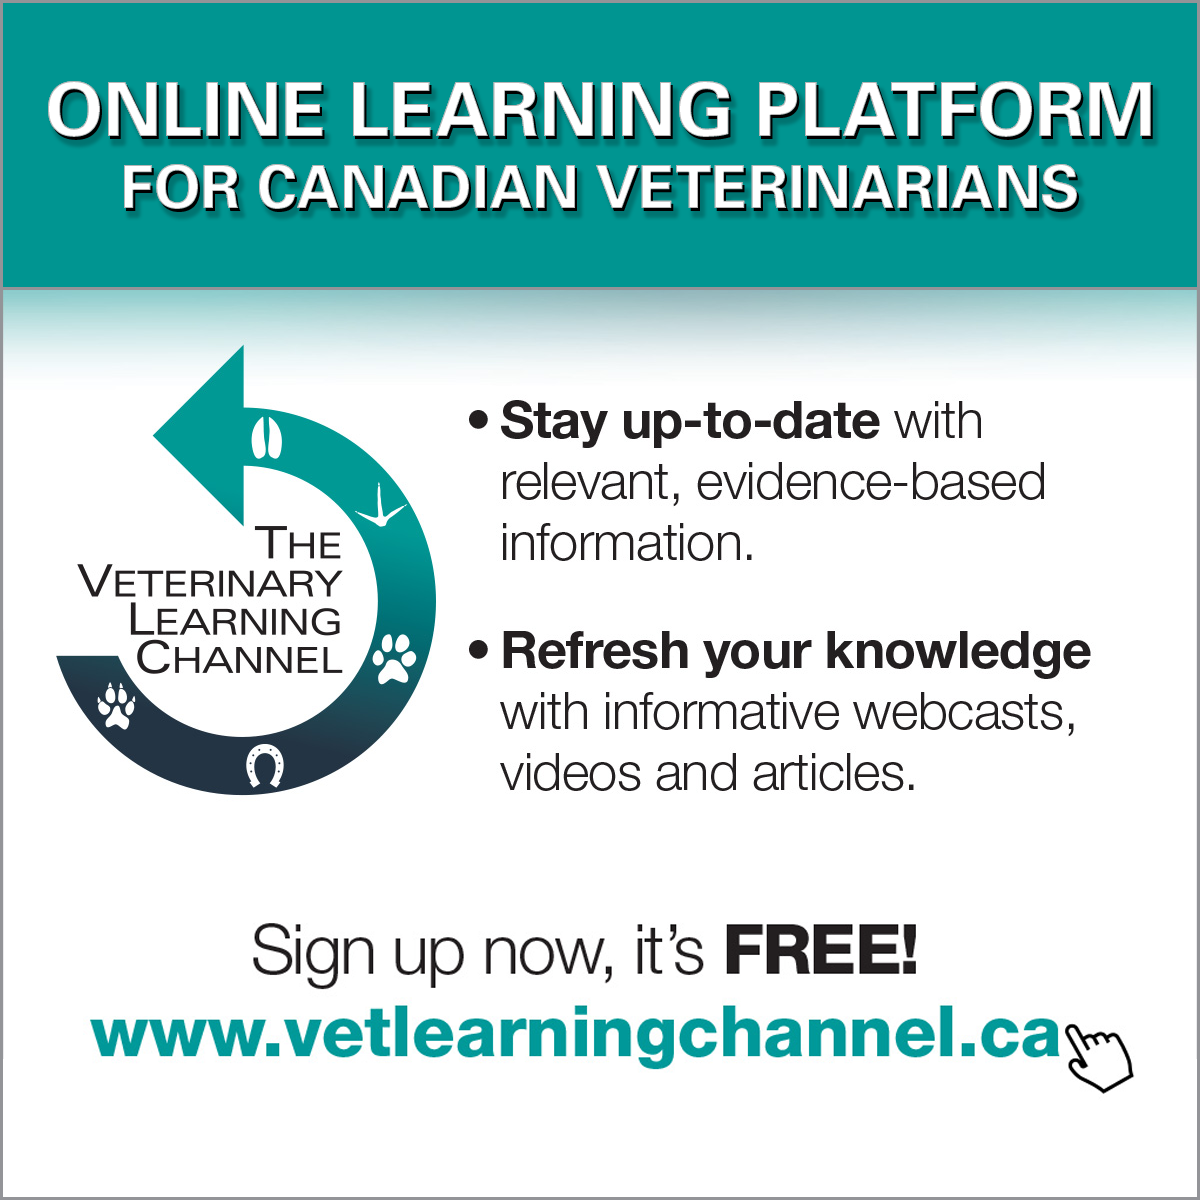 www.vetlearningchannel.ca